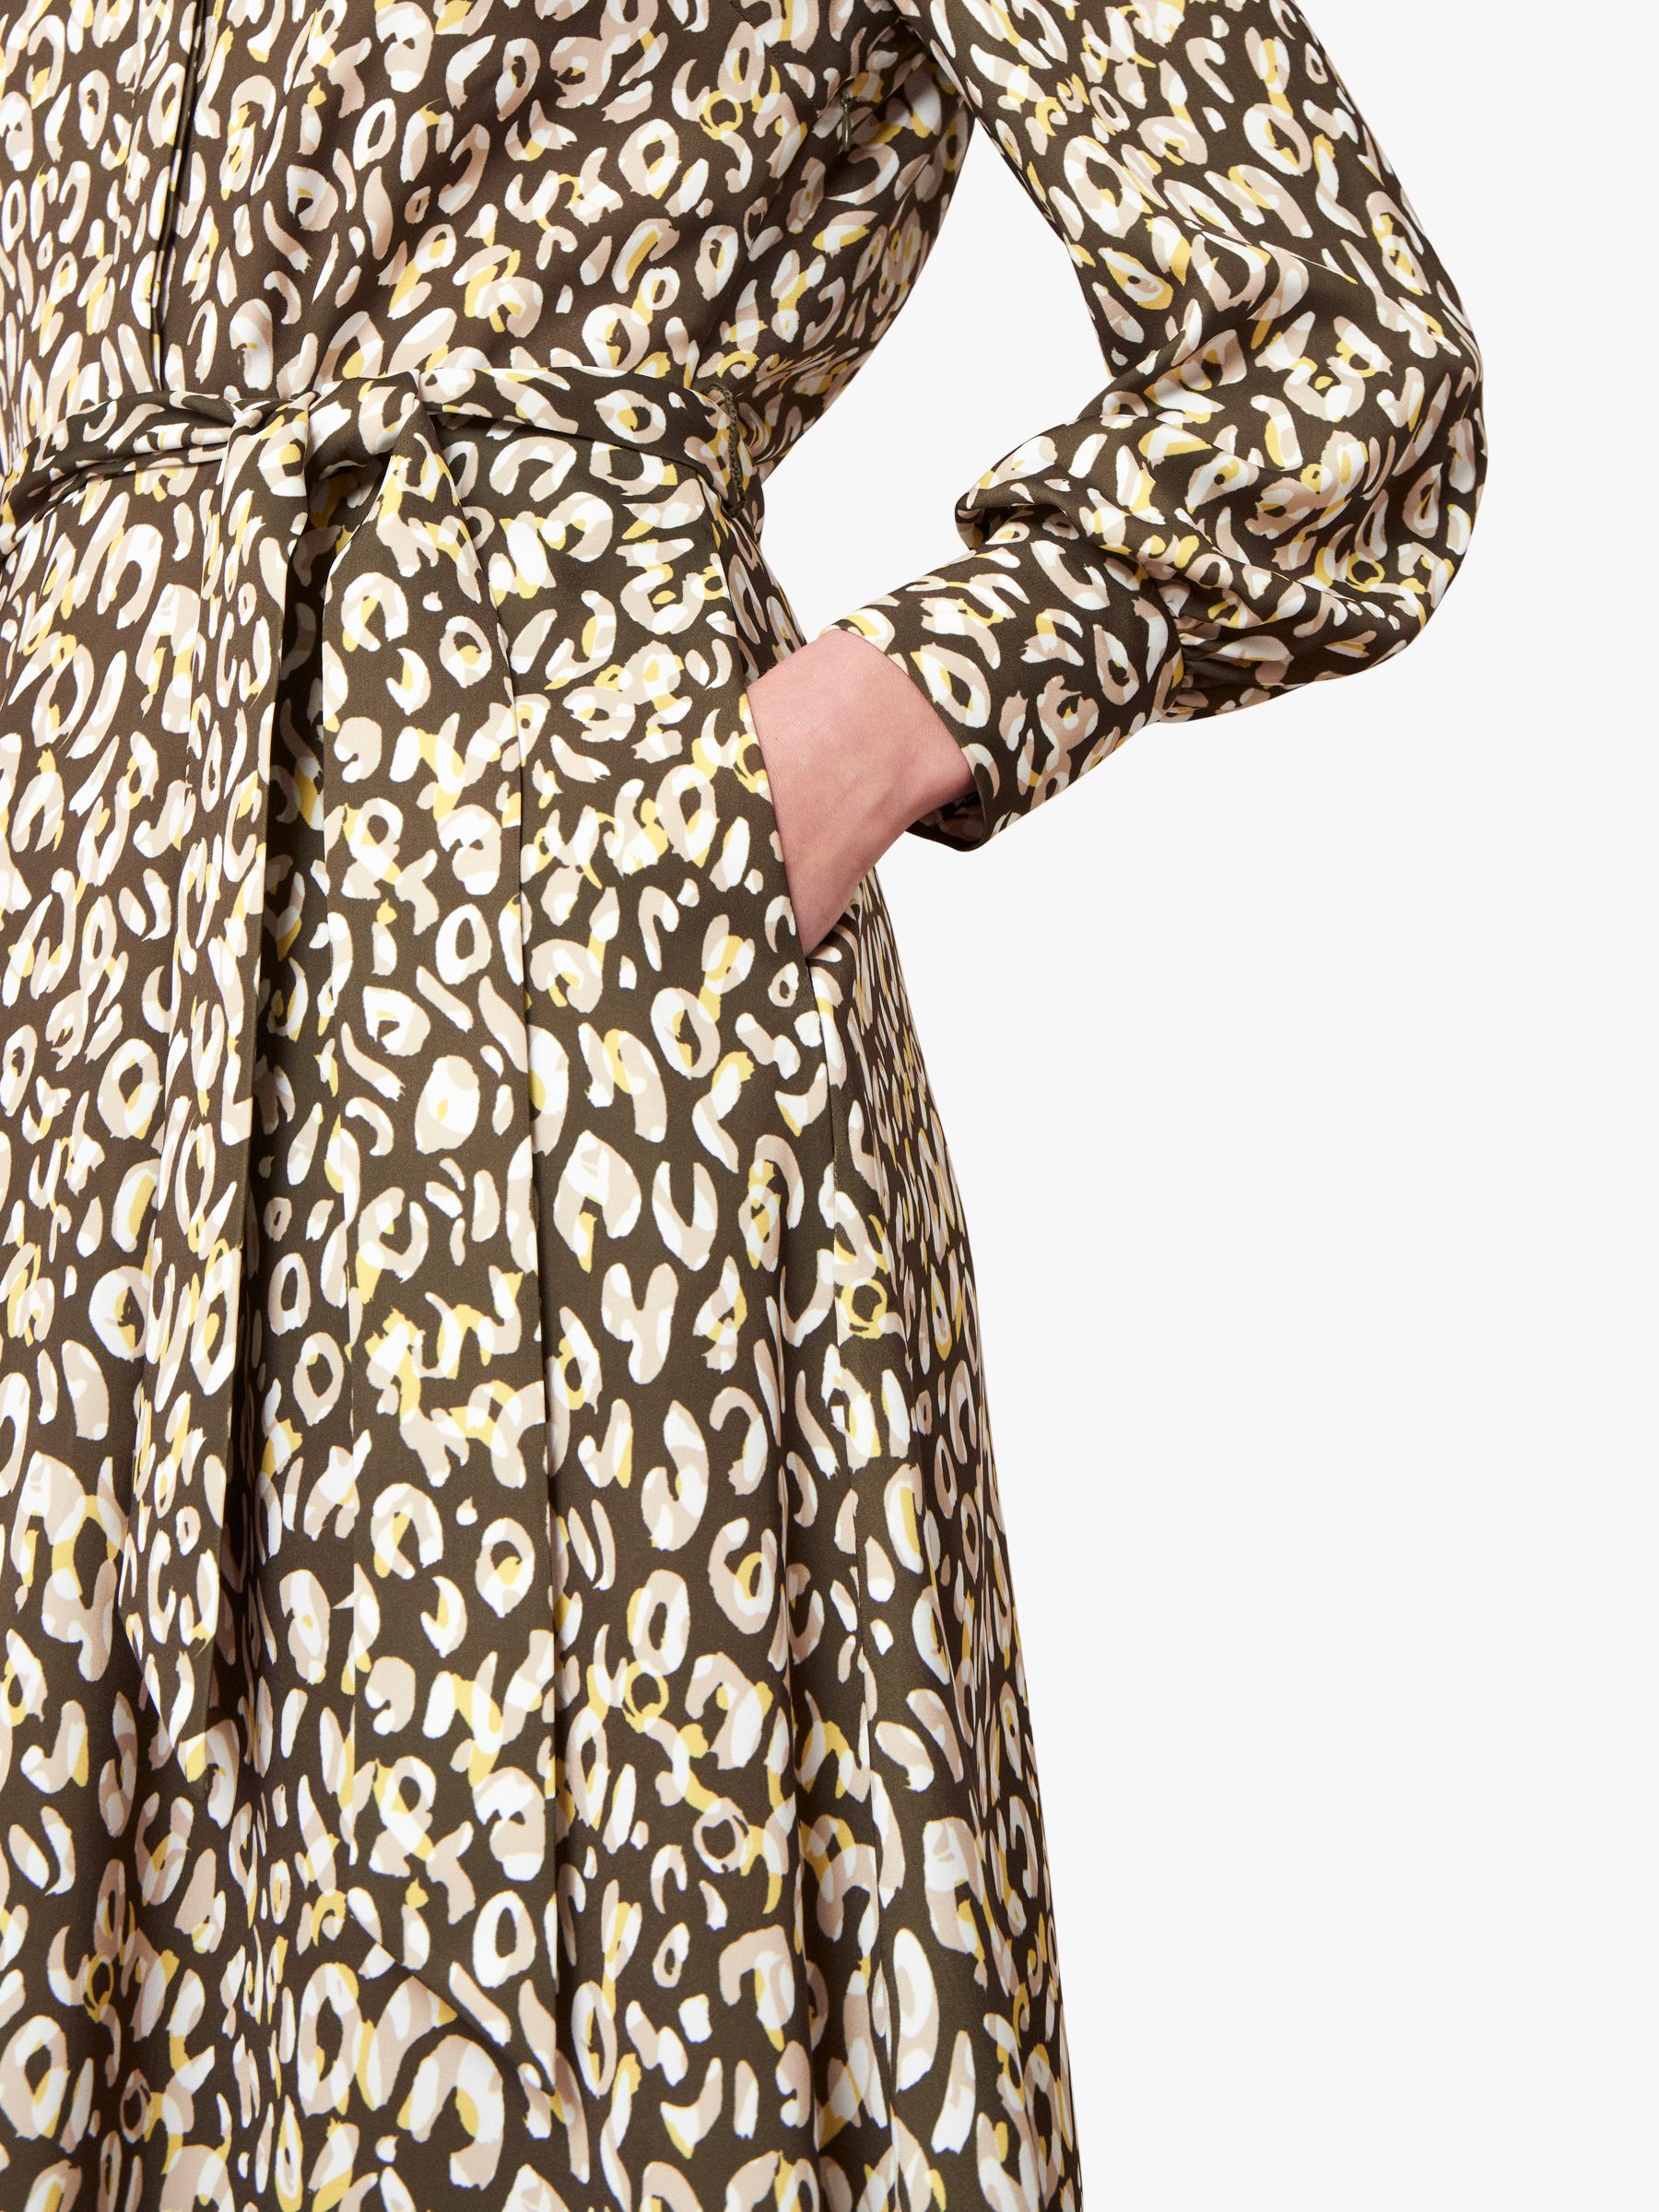 yellow leopard print shirt dress